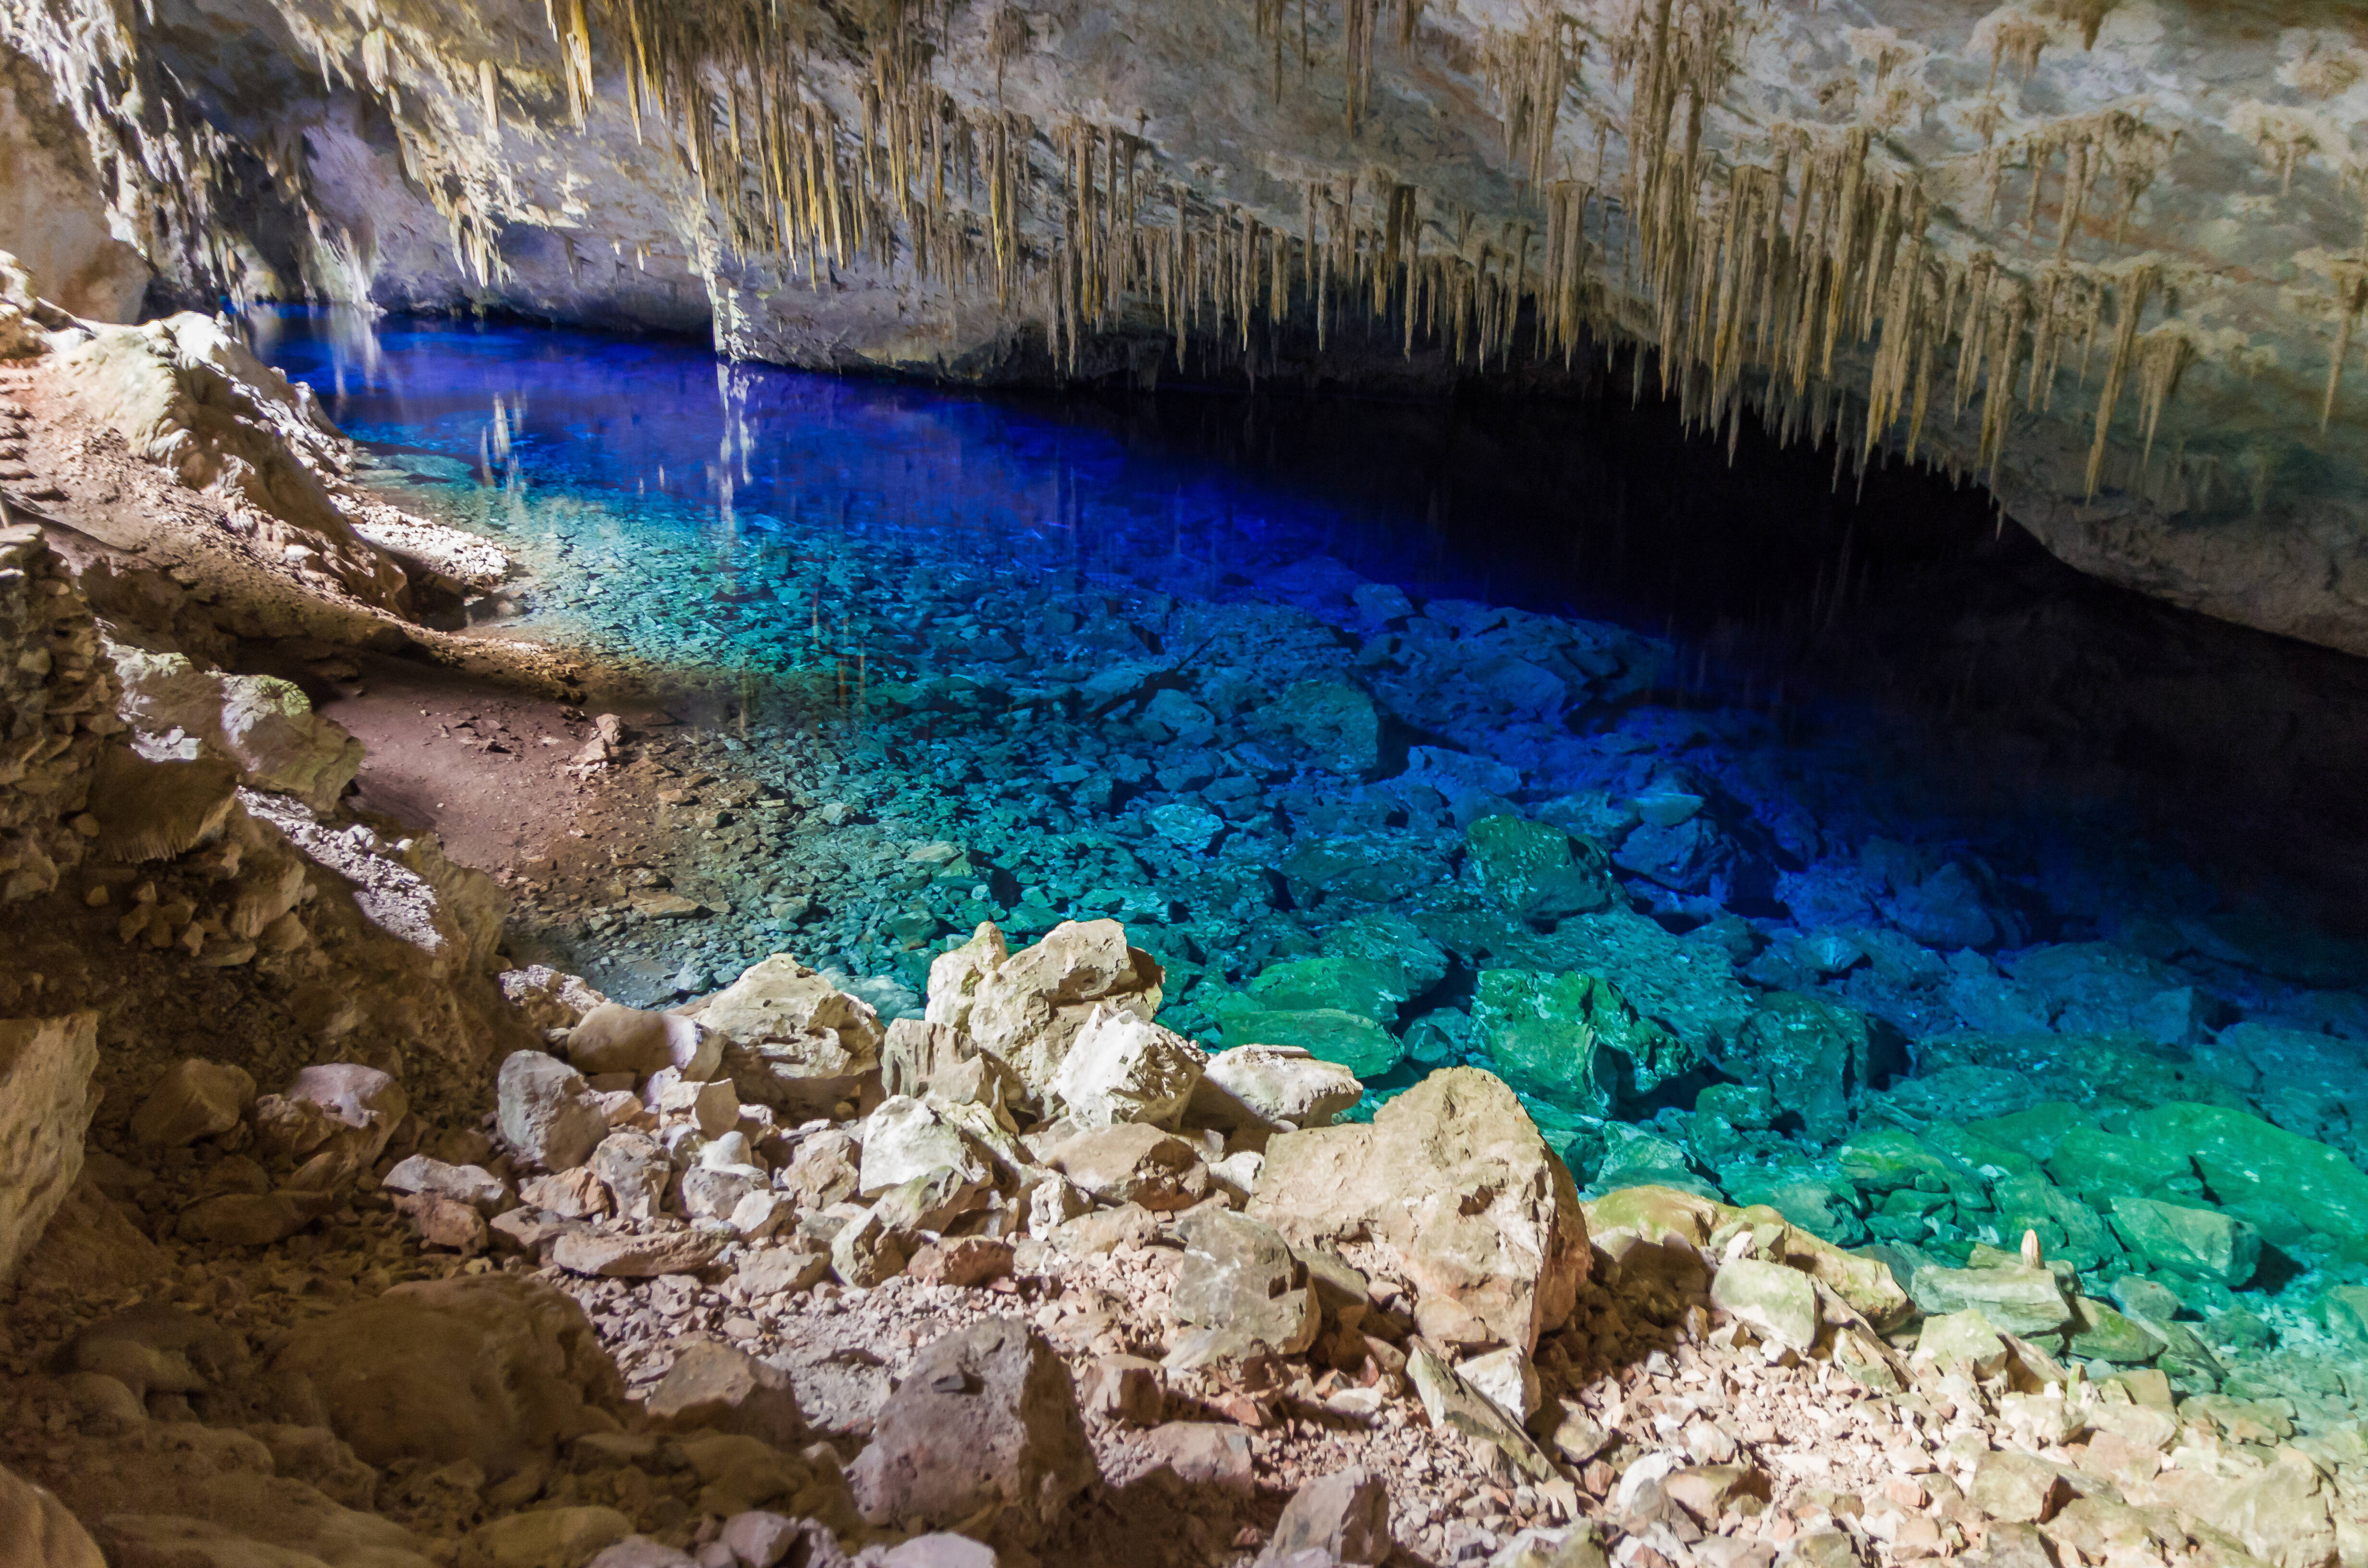 De cavernas como essa em Bonito a praias e cidades, existem diversos lugares feitos para viajar no Brasil a dois. Foto: shutterstock 